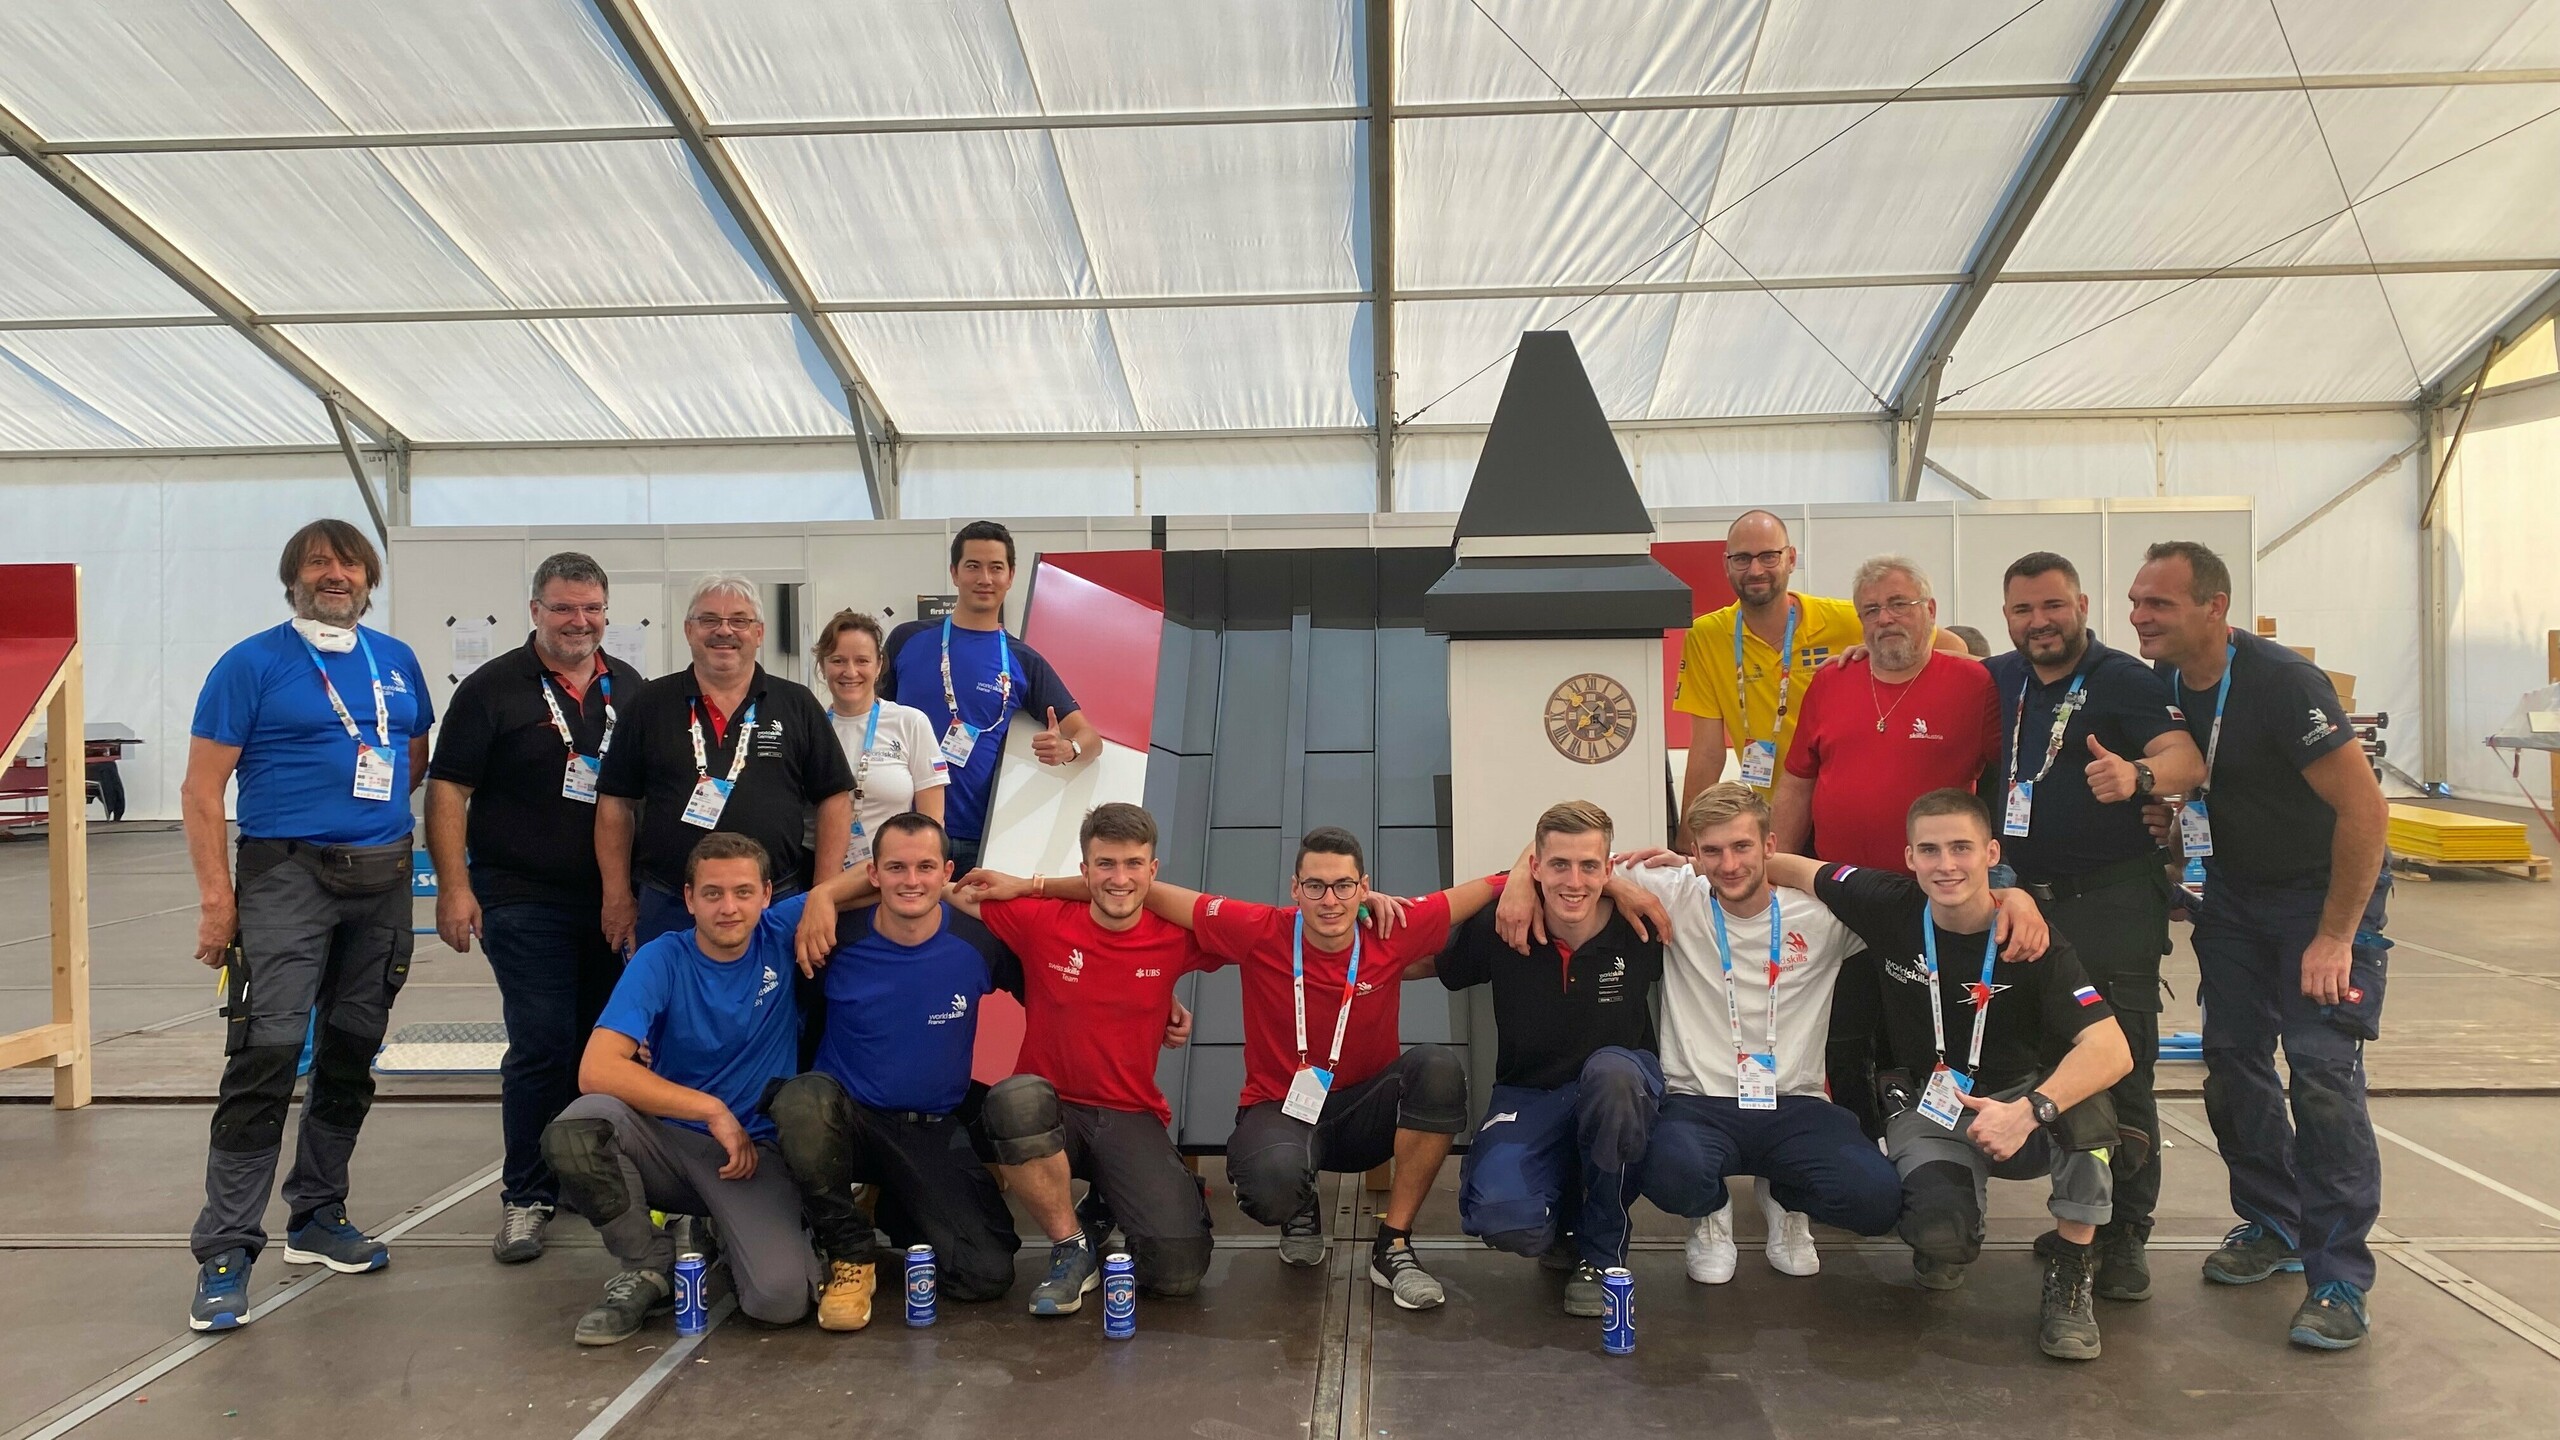 Gruppenfoto mit den Teilnehmern, dem Expertenteam, Trainern und den Verantwortlichen hinter den EuroSkills 2021